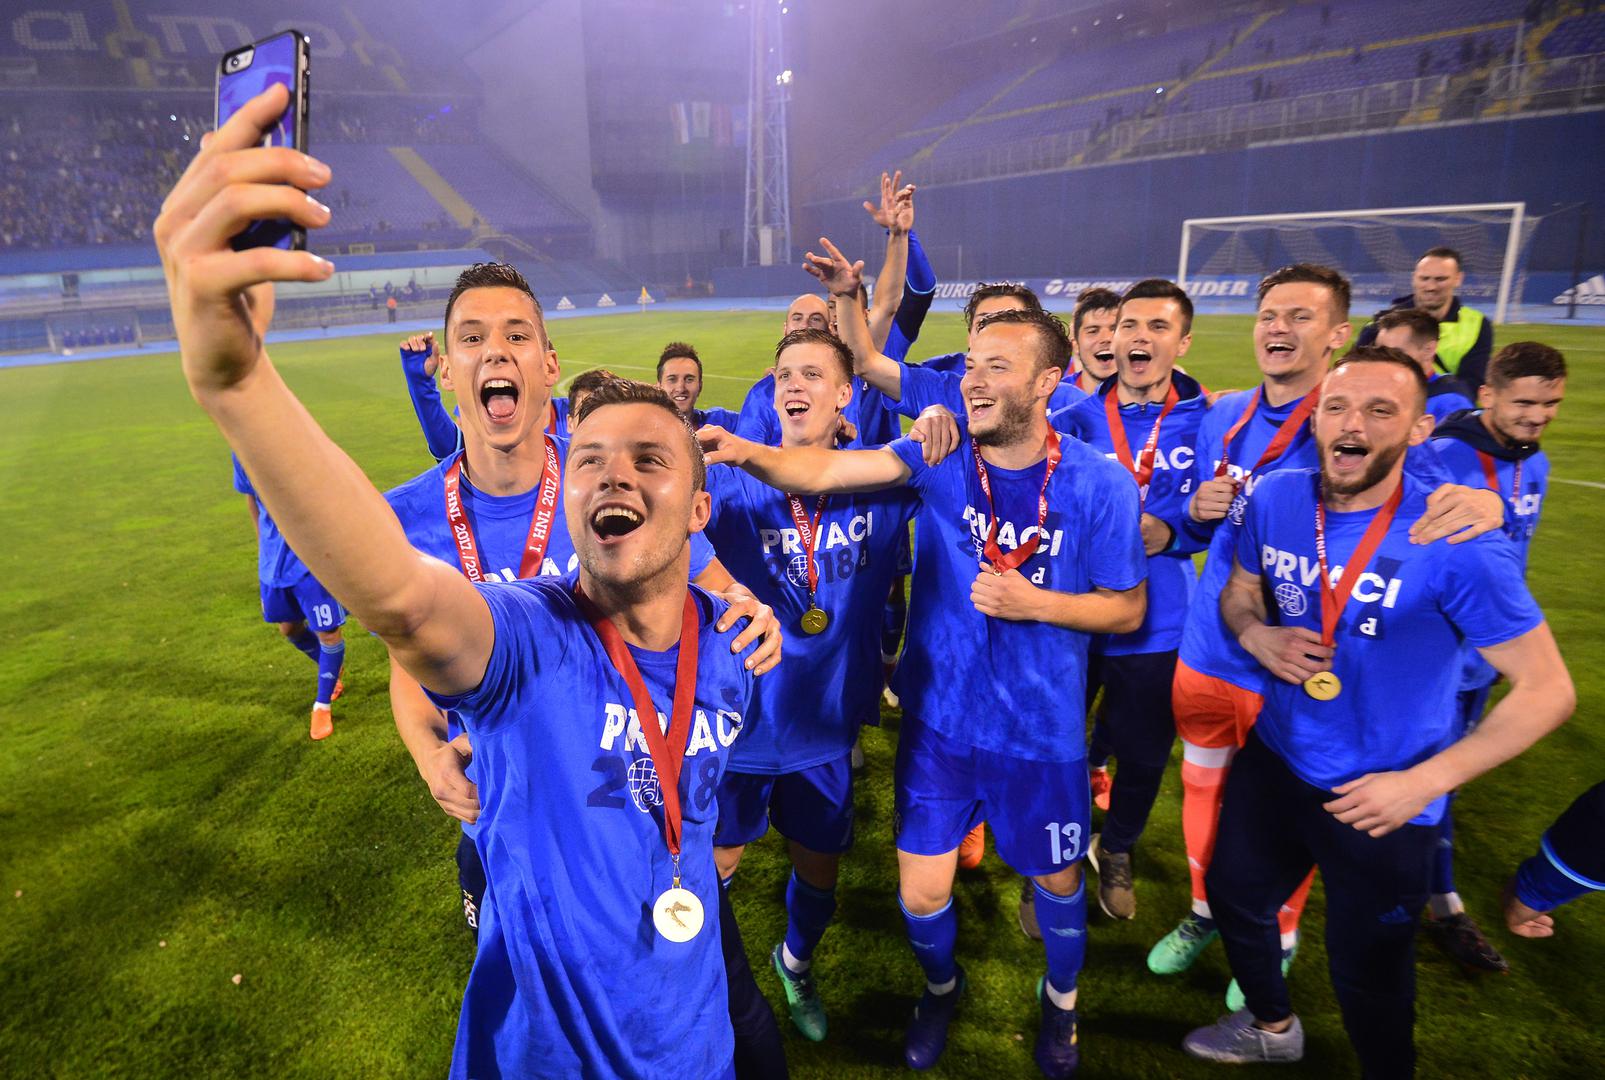 Ovim trijumfom Dinamo je podigao raspoloženje uoči finala Kupa protiv Hajduka, koji se igra 23. svibnja u Vinkovcima